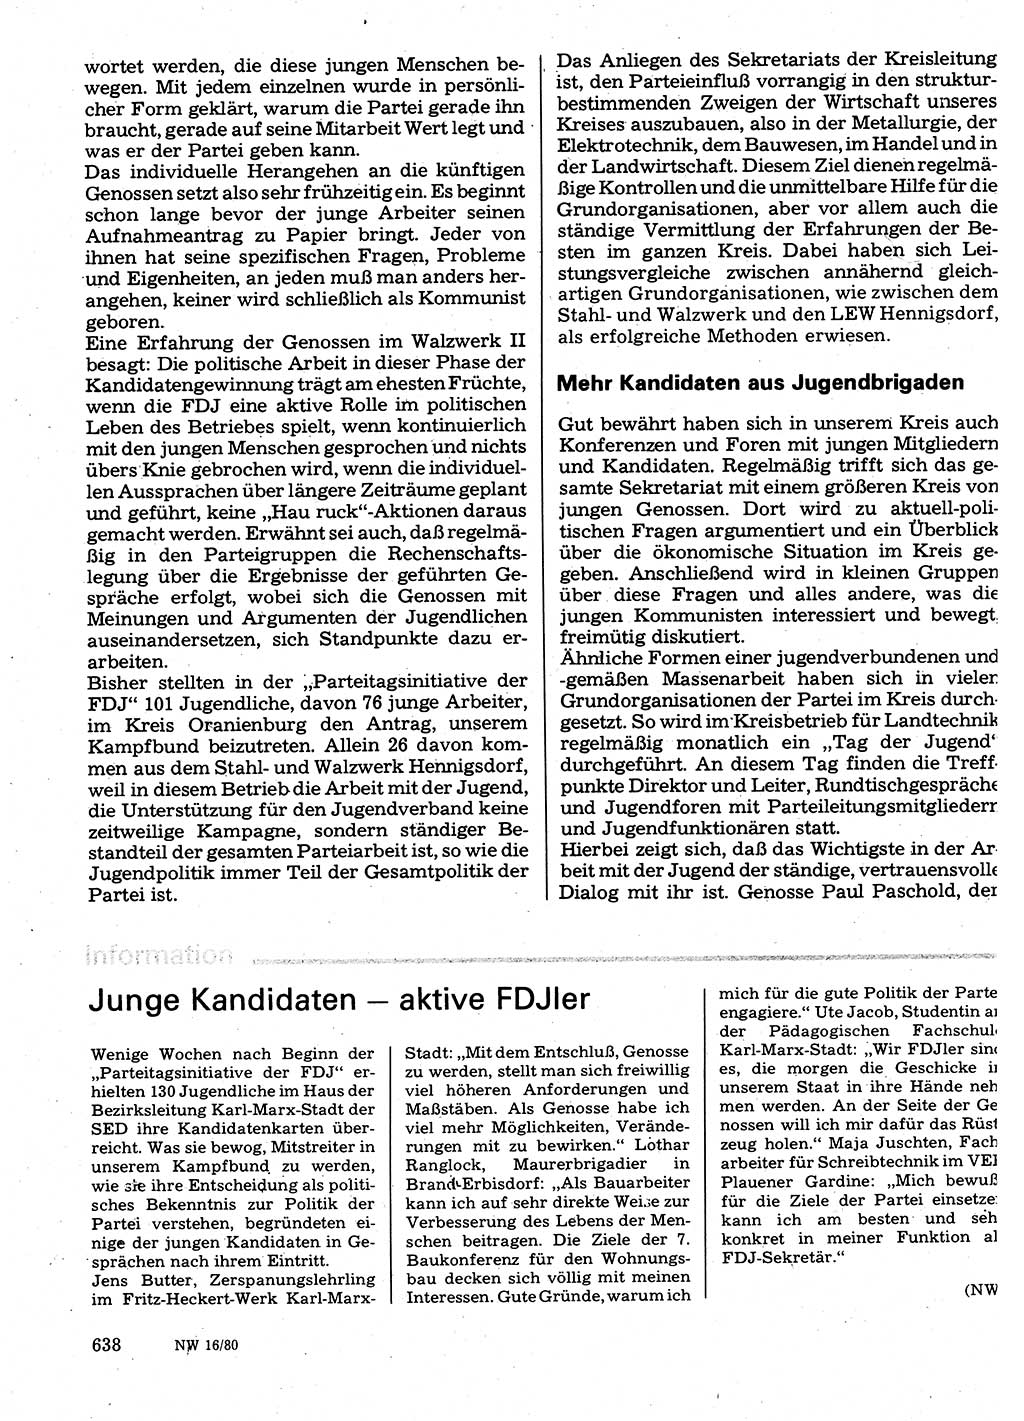 Neuer Weg (NW), Organ des Zentralkomitees (ZK) der SED (Sozialistische Einheitspartei Deutschlands) für Fragen des Parteilebens, 35. Jahrgang [Deutsche Demokratische Republik (DDR)] 1980, Seite 638 (NW ZK SED DDR 1980, S. 638)